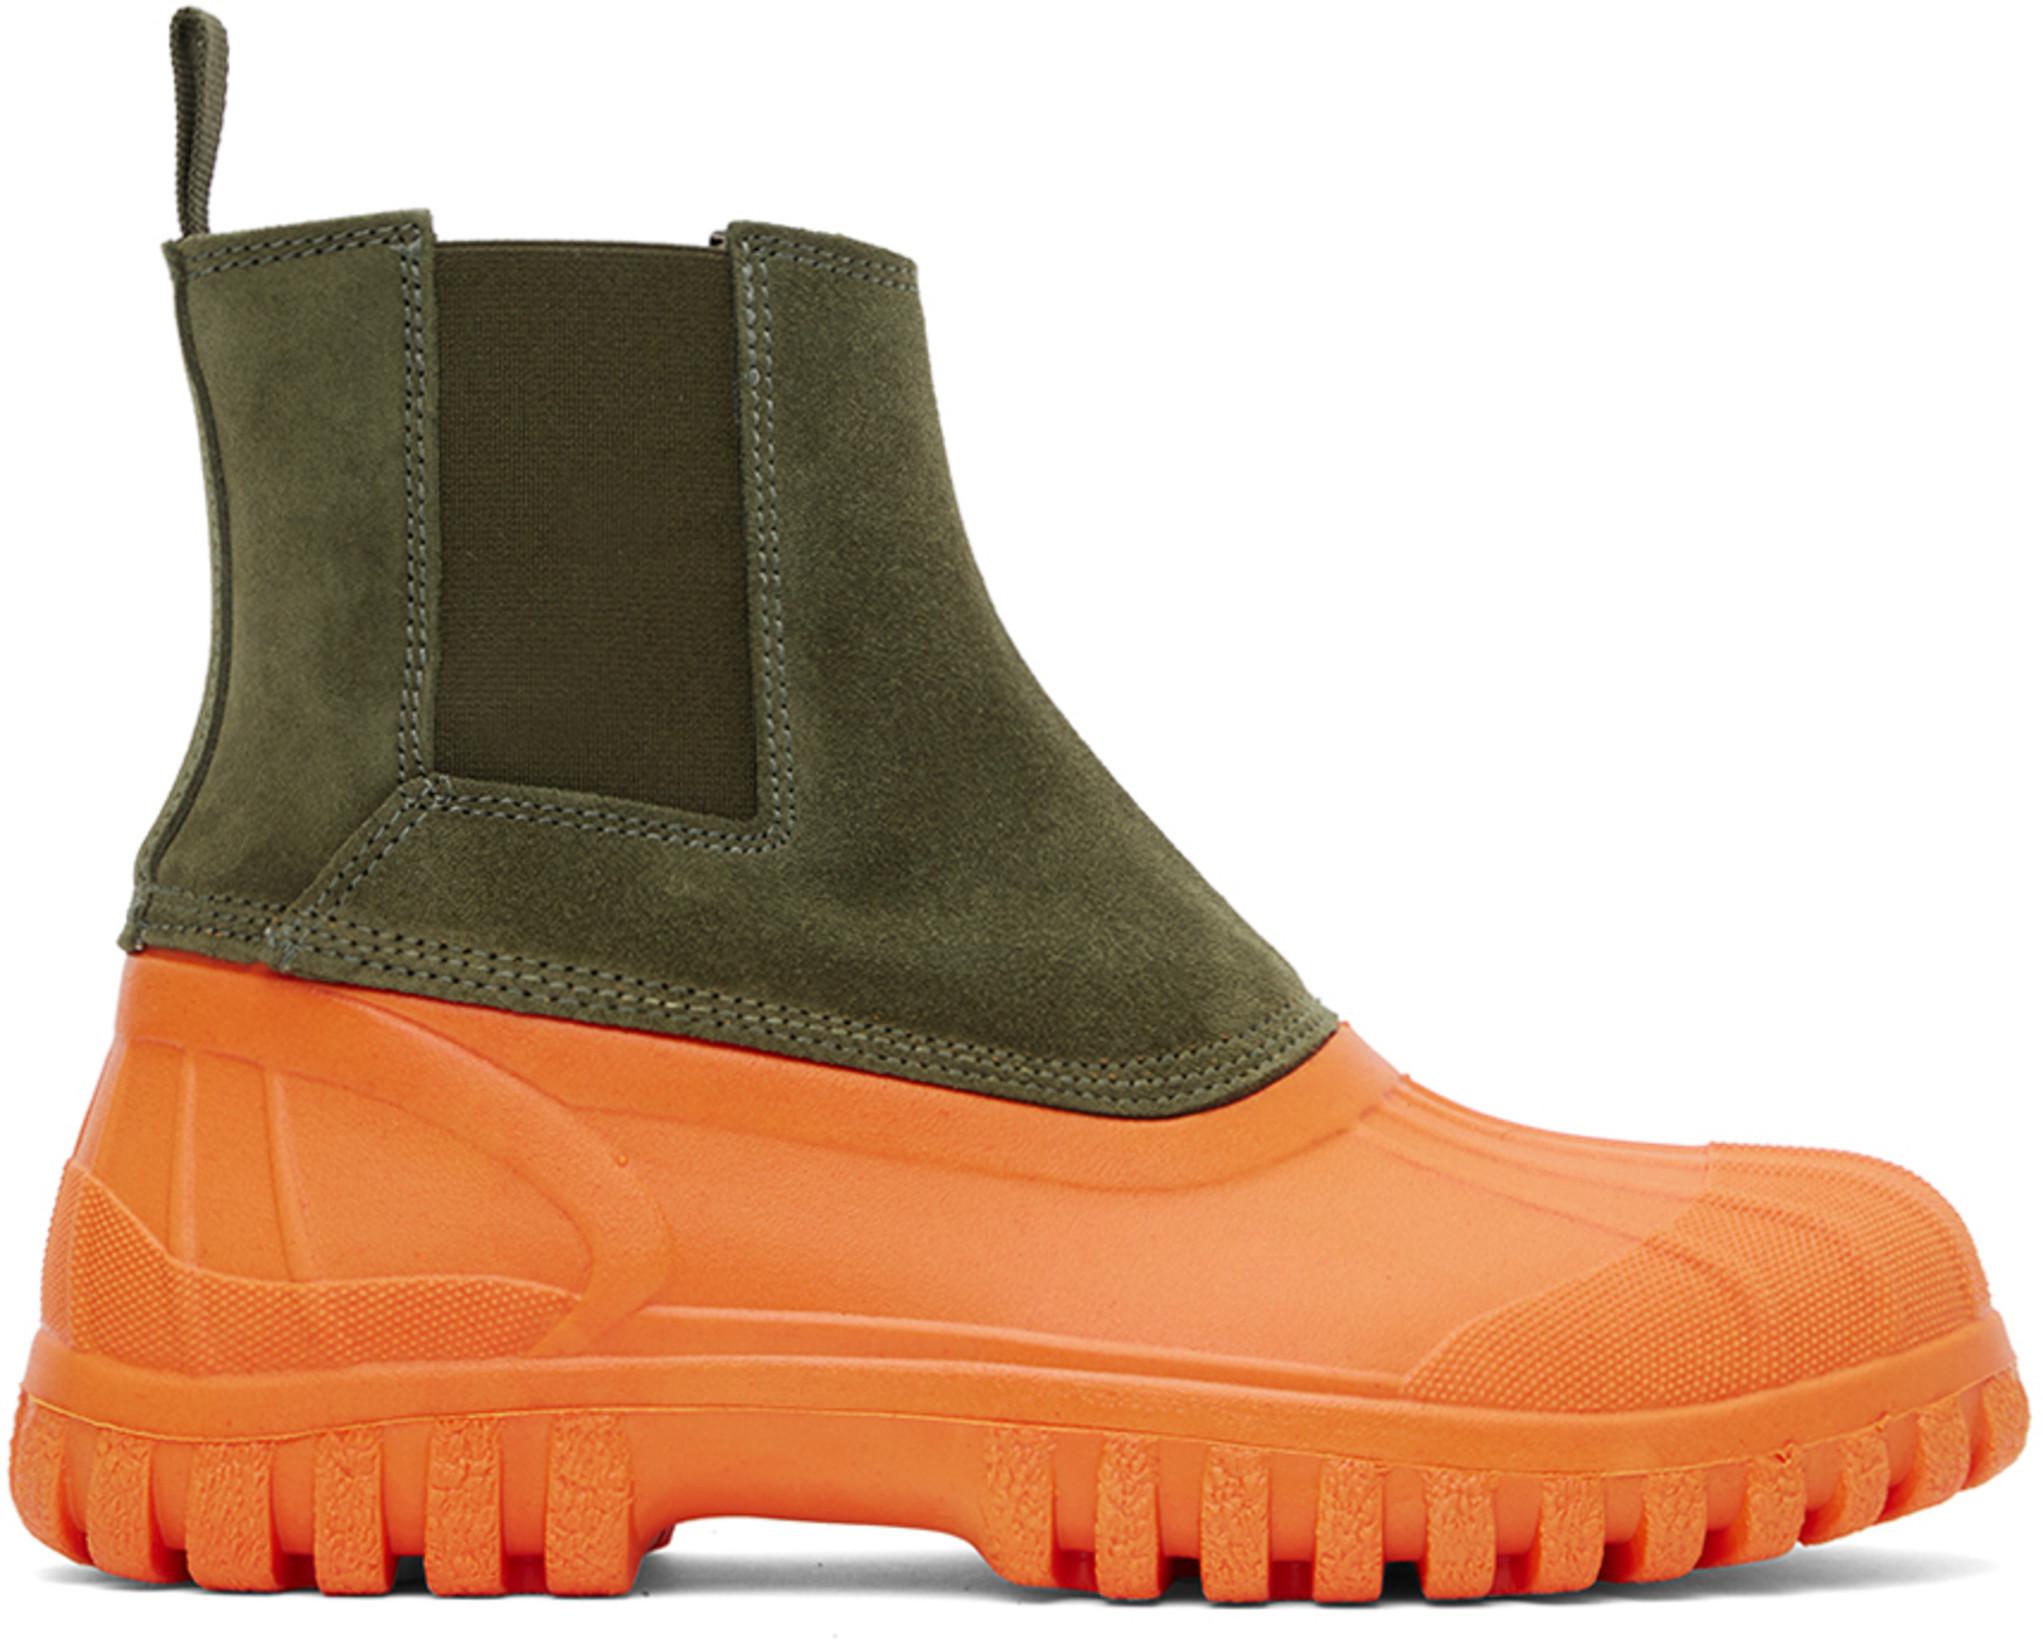 Green & Orange Balbi Chelsea Boots by DIEMME